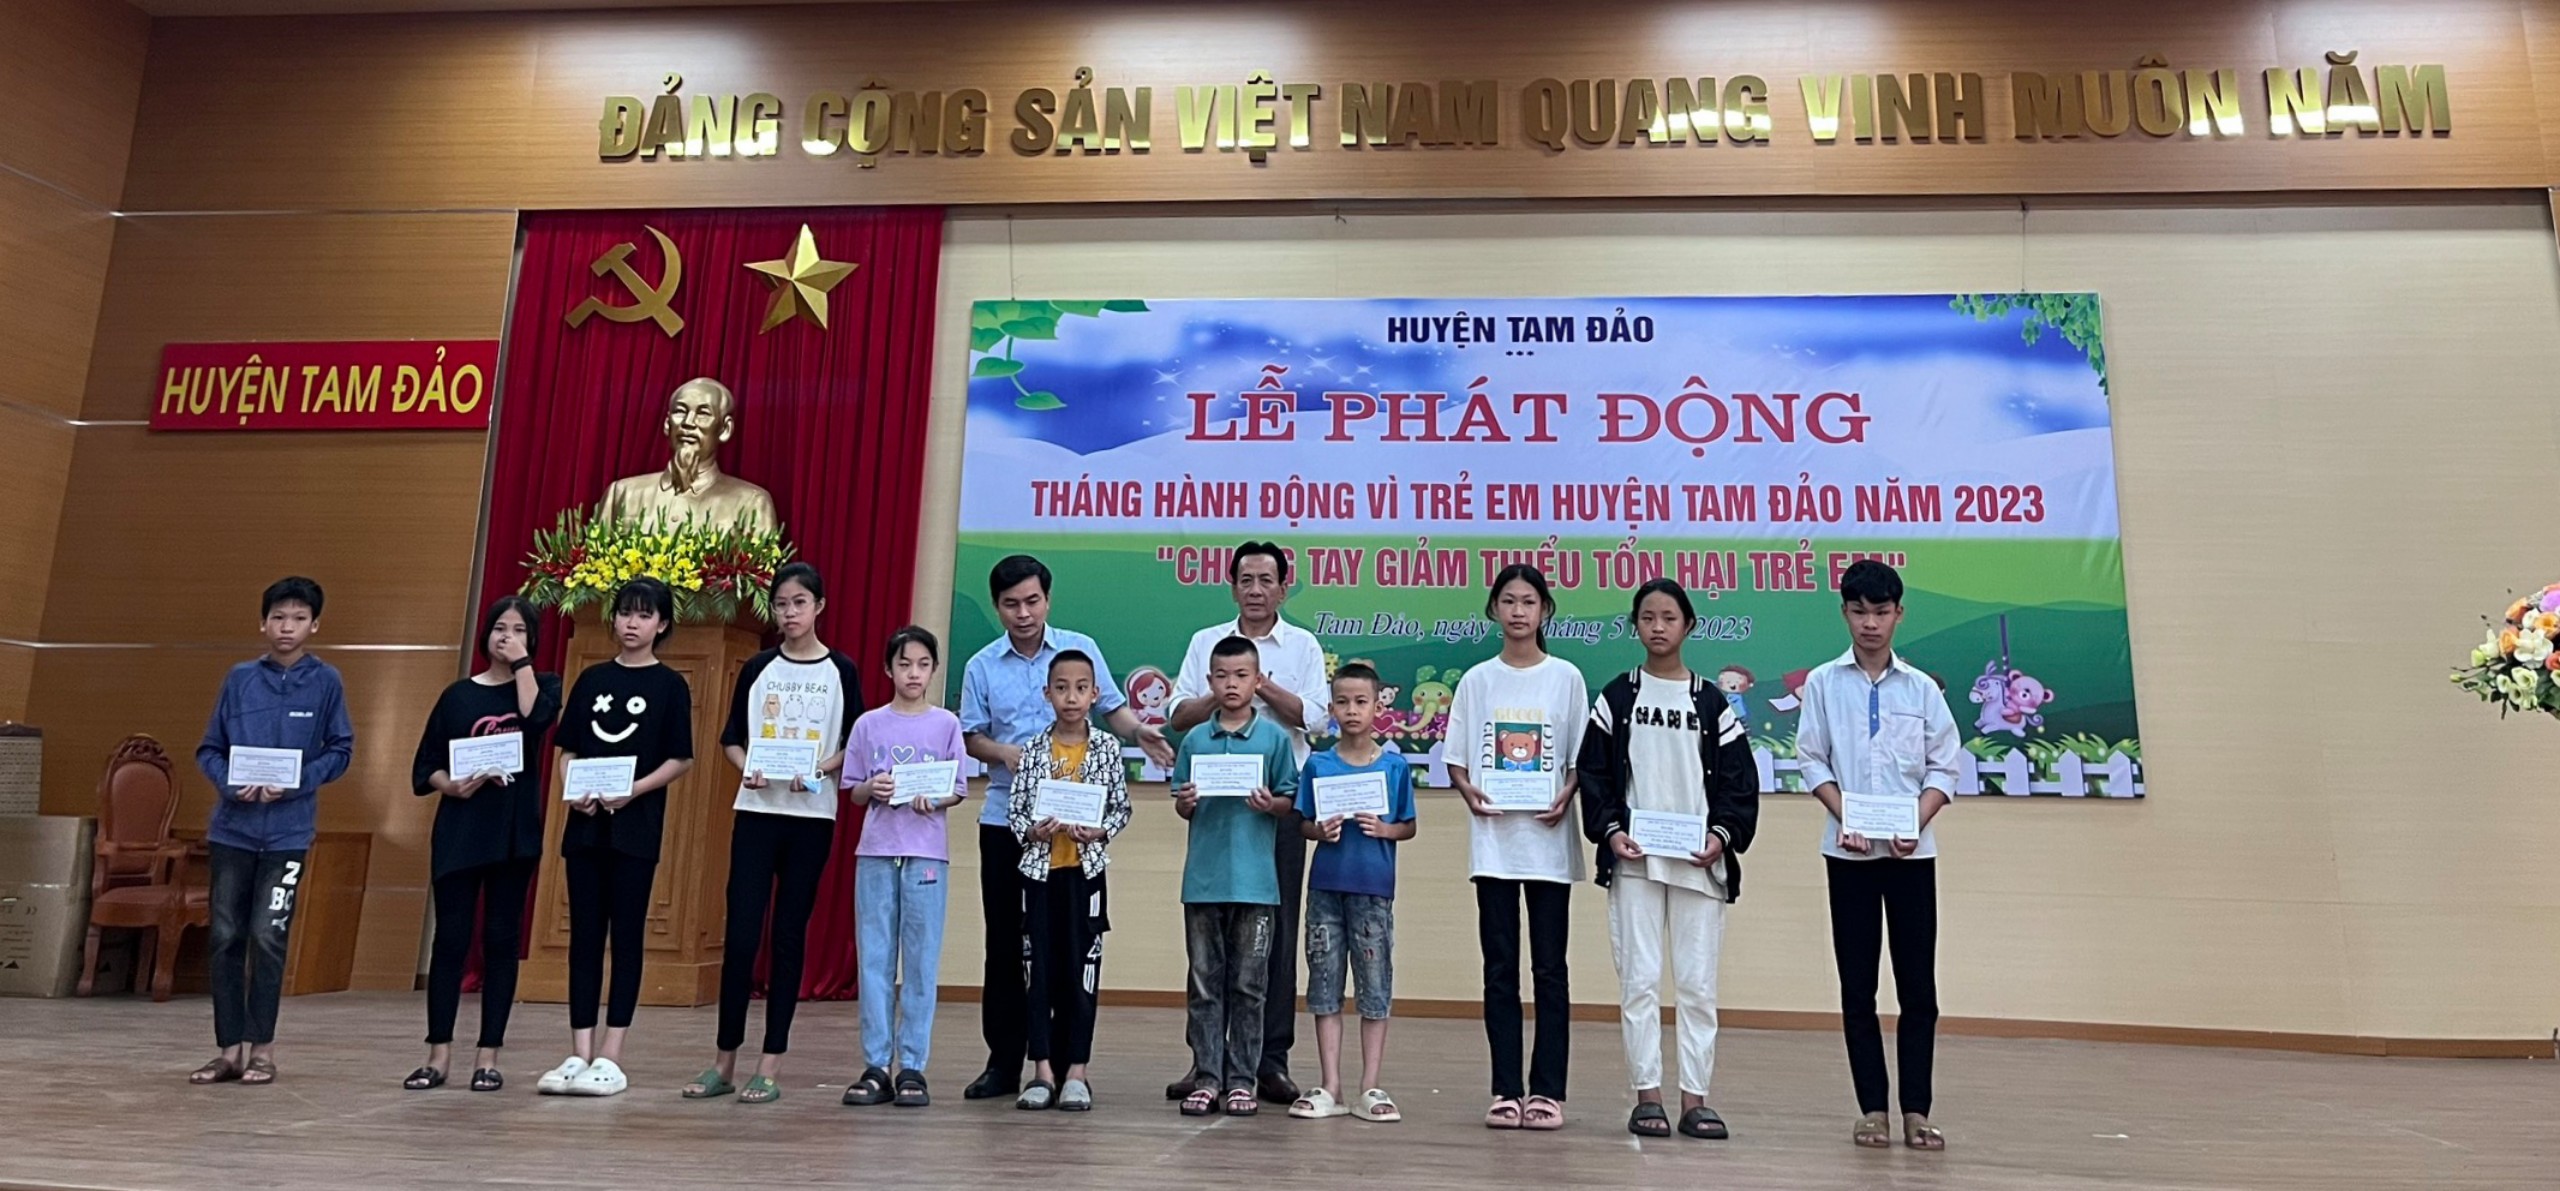 Lễ phát động Tháng hành động vì trẻ em tại huyện Tam Đảo